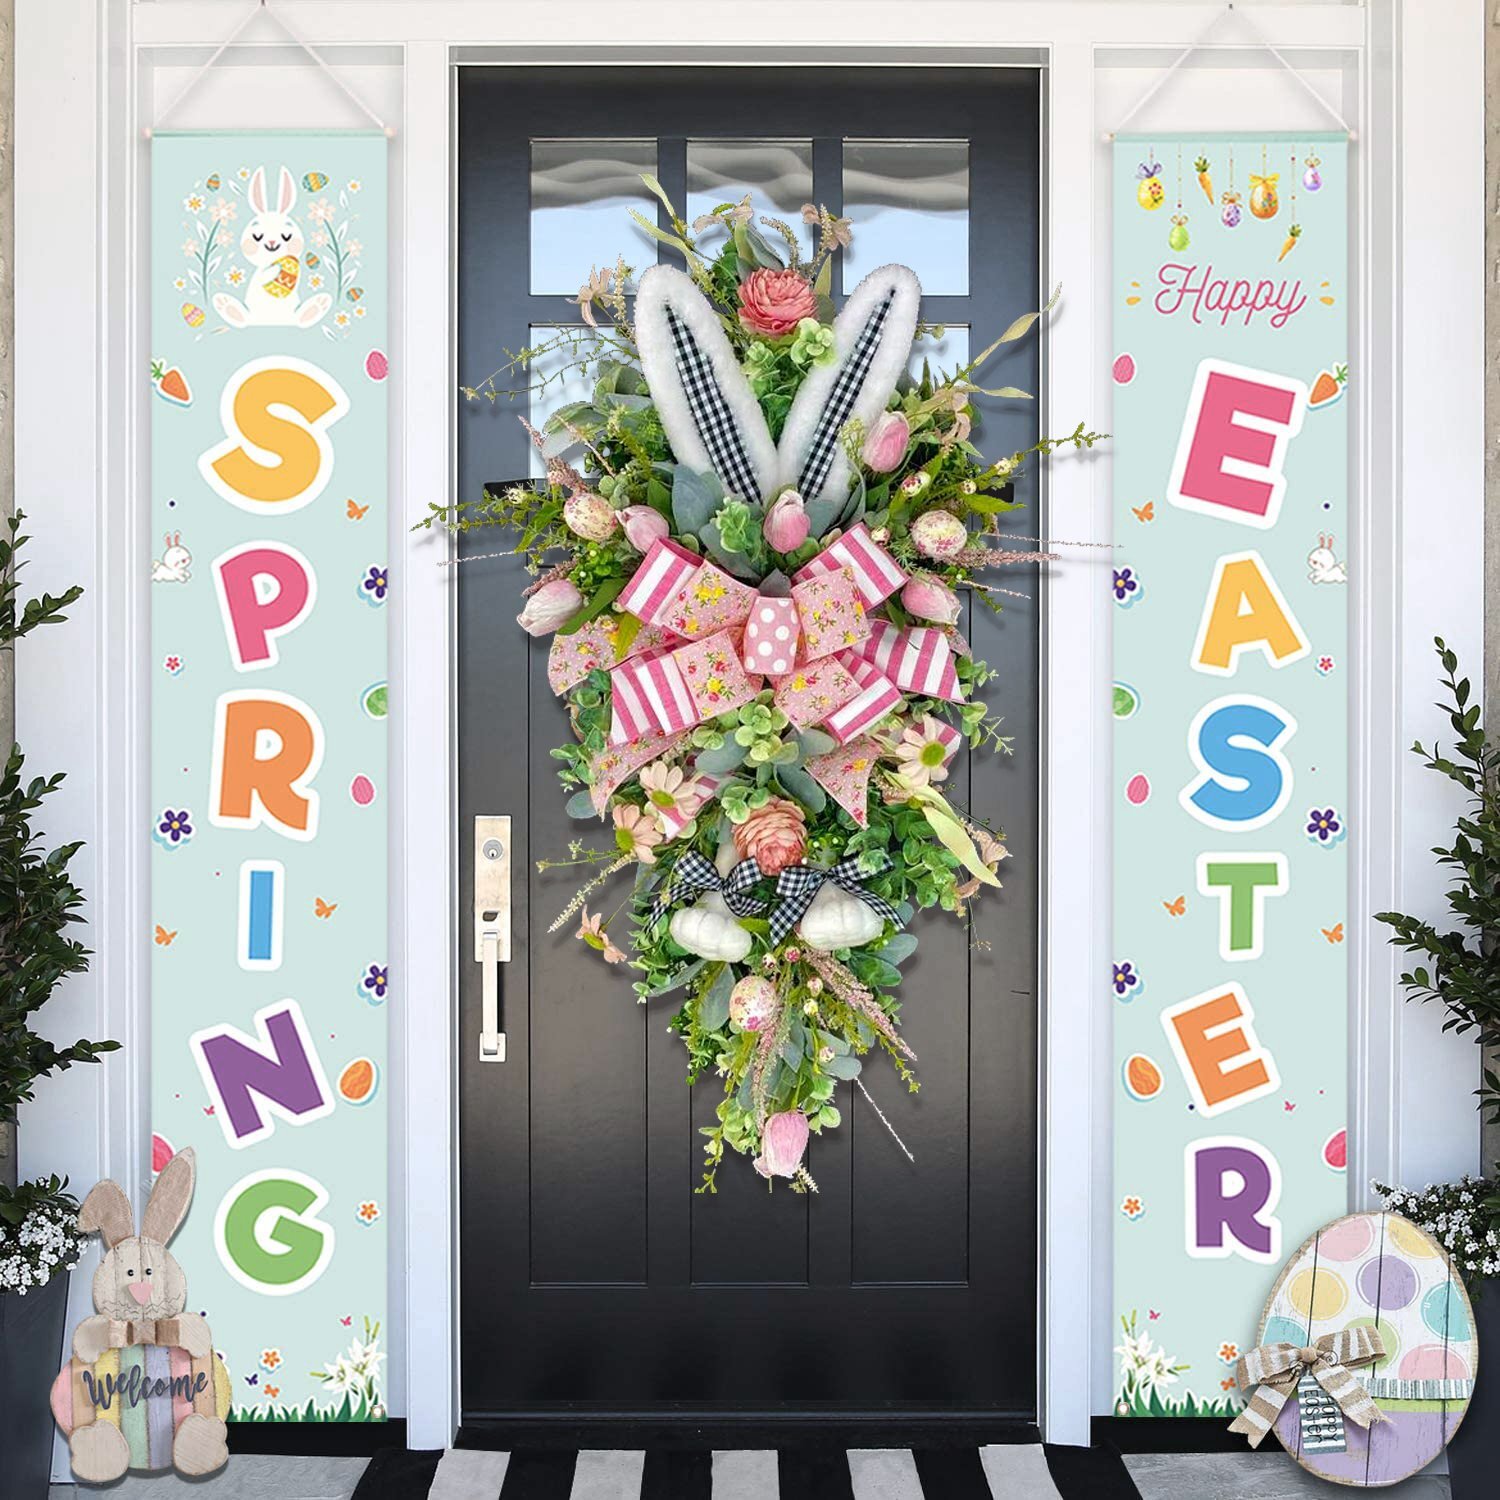 Large Easter Wreaths for Front Door, Designer Easter Wreath, Floral Spring Wreath